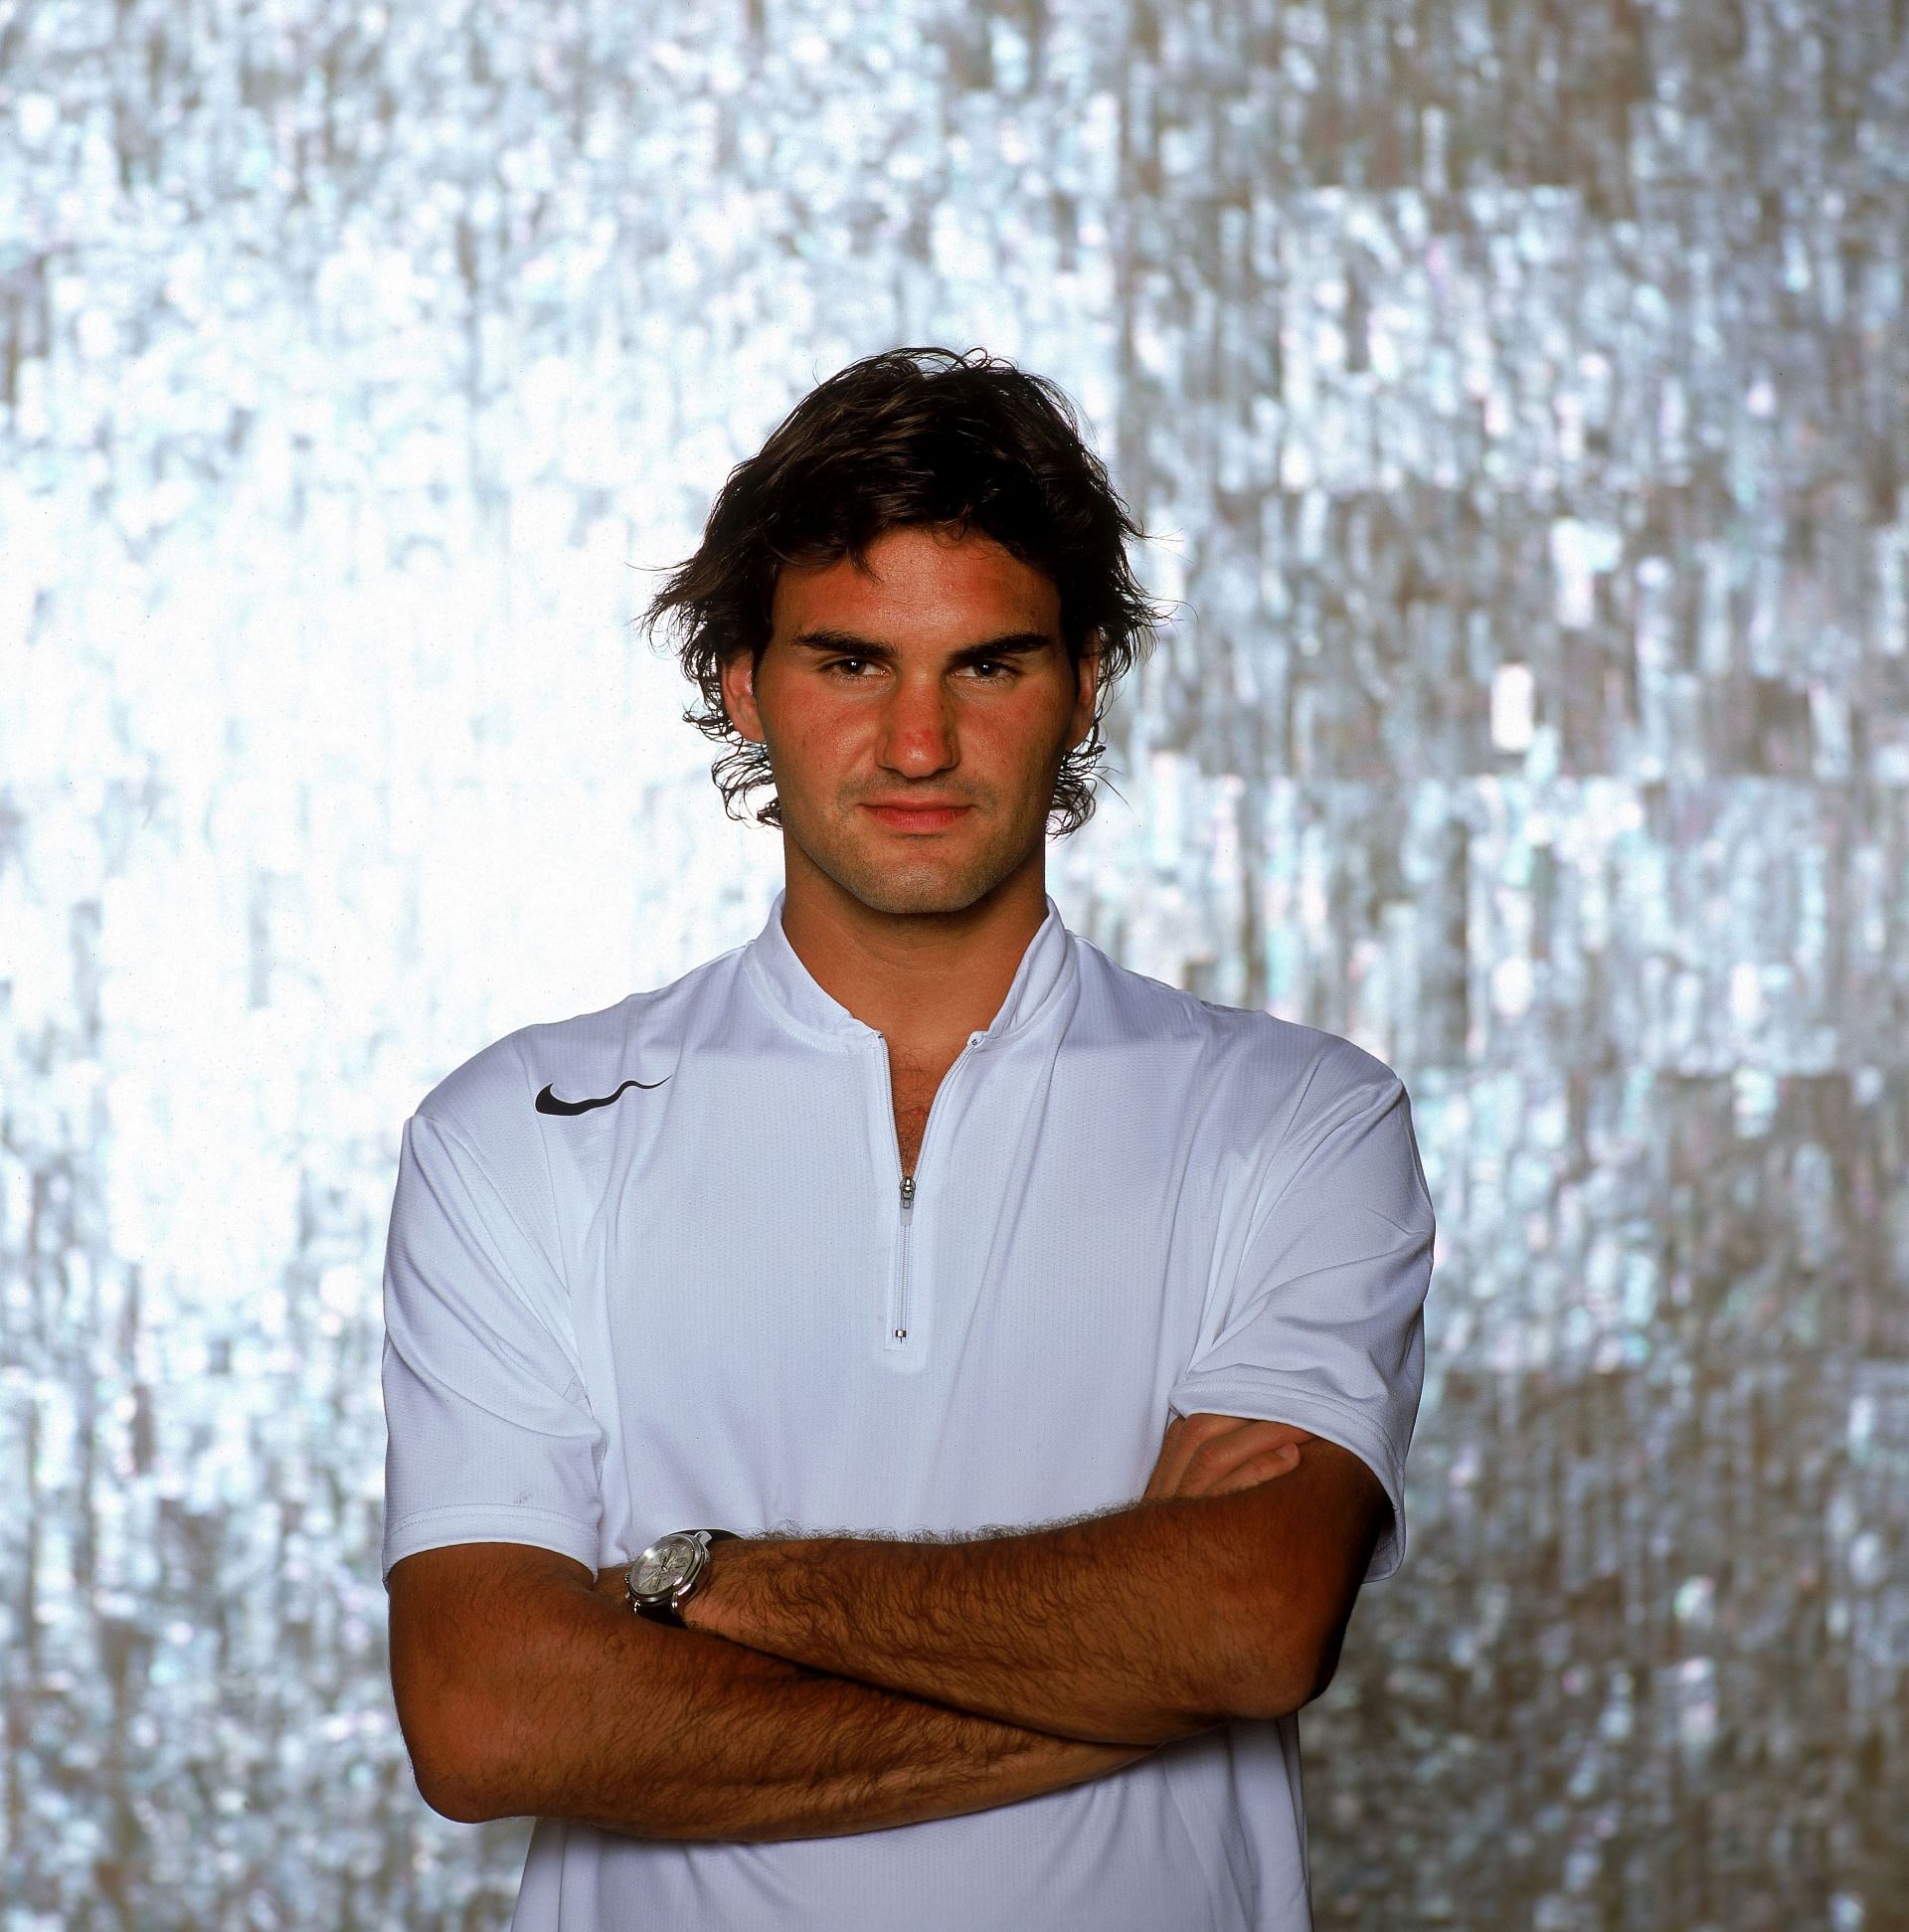 Roger Federer Portrait Shoot